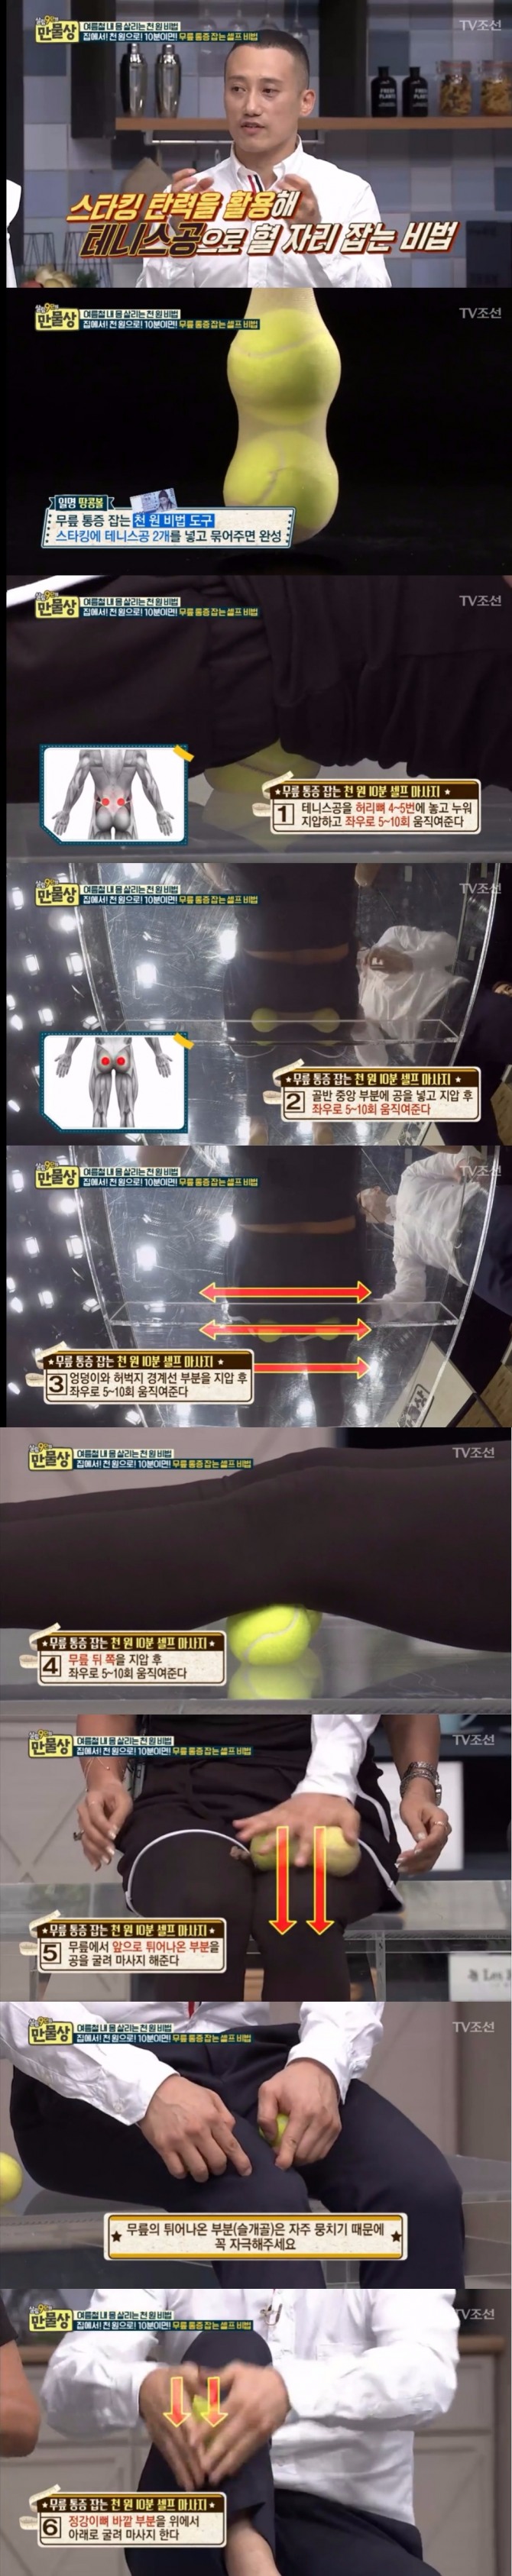 13일 밤 방송된 TV 조선 '살림9단의 만물상'에서는 김무열 바디 트레이너가 출연, 테니스공을 이용한 셀프 마사지 비법을 공개했다. 사진=TV조선 방송 캡처